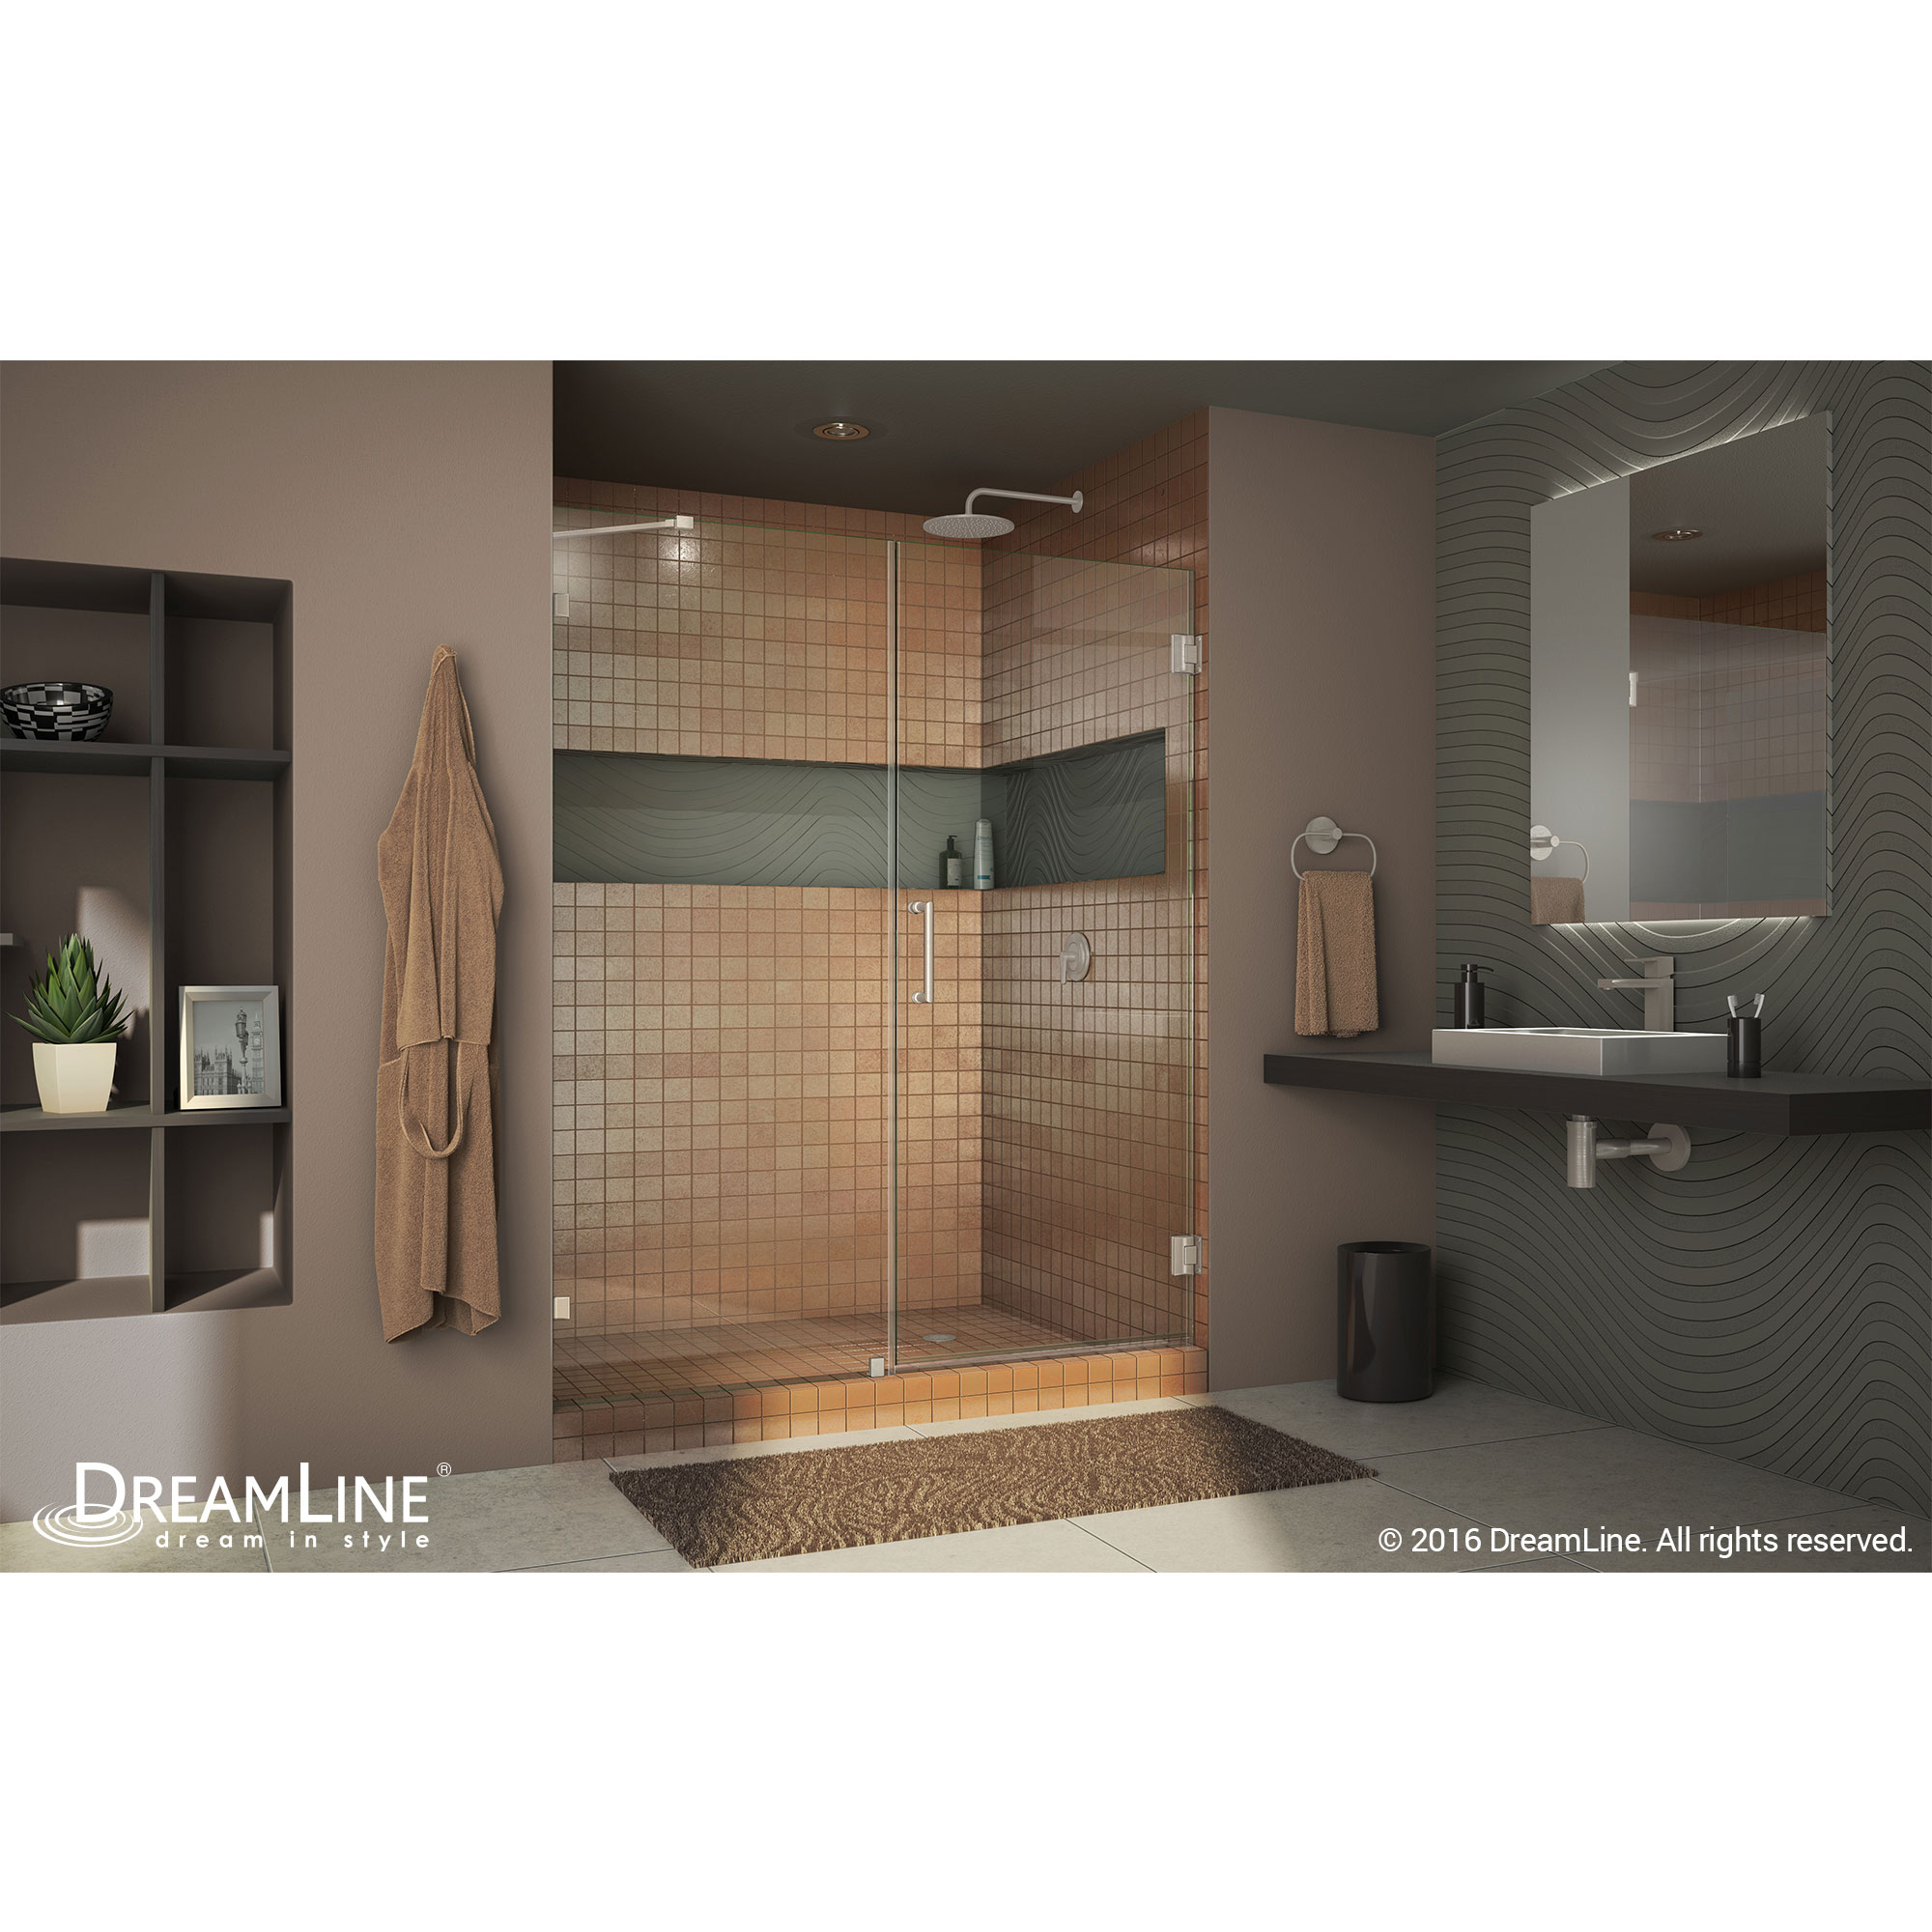 Dreamline SHDR-23597210-04 Brushed Nickel Radiance 59" Hinged Shower Door